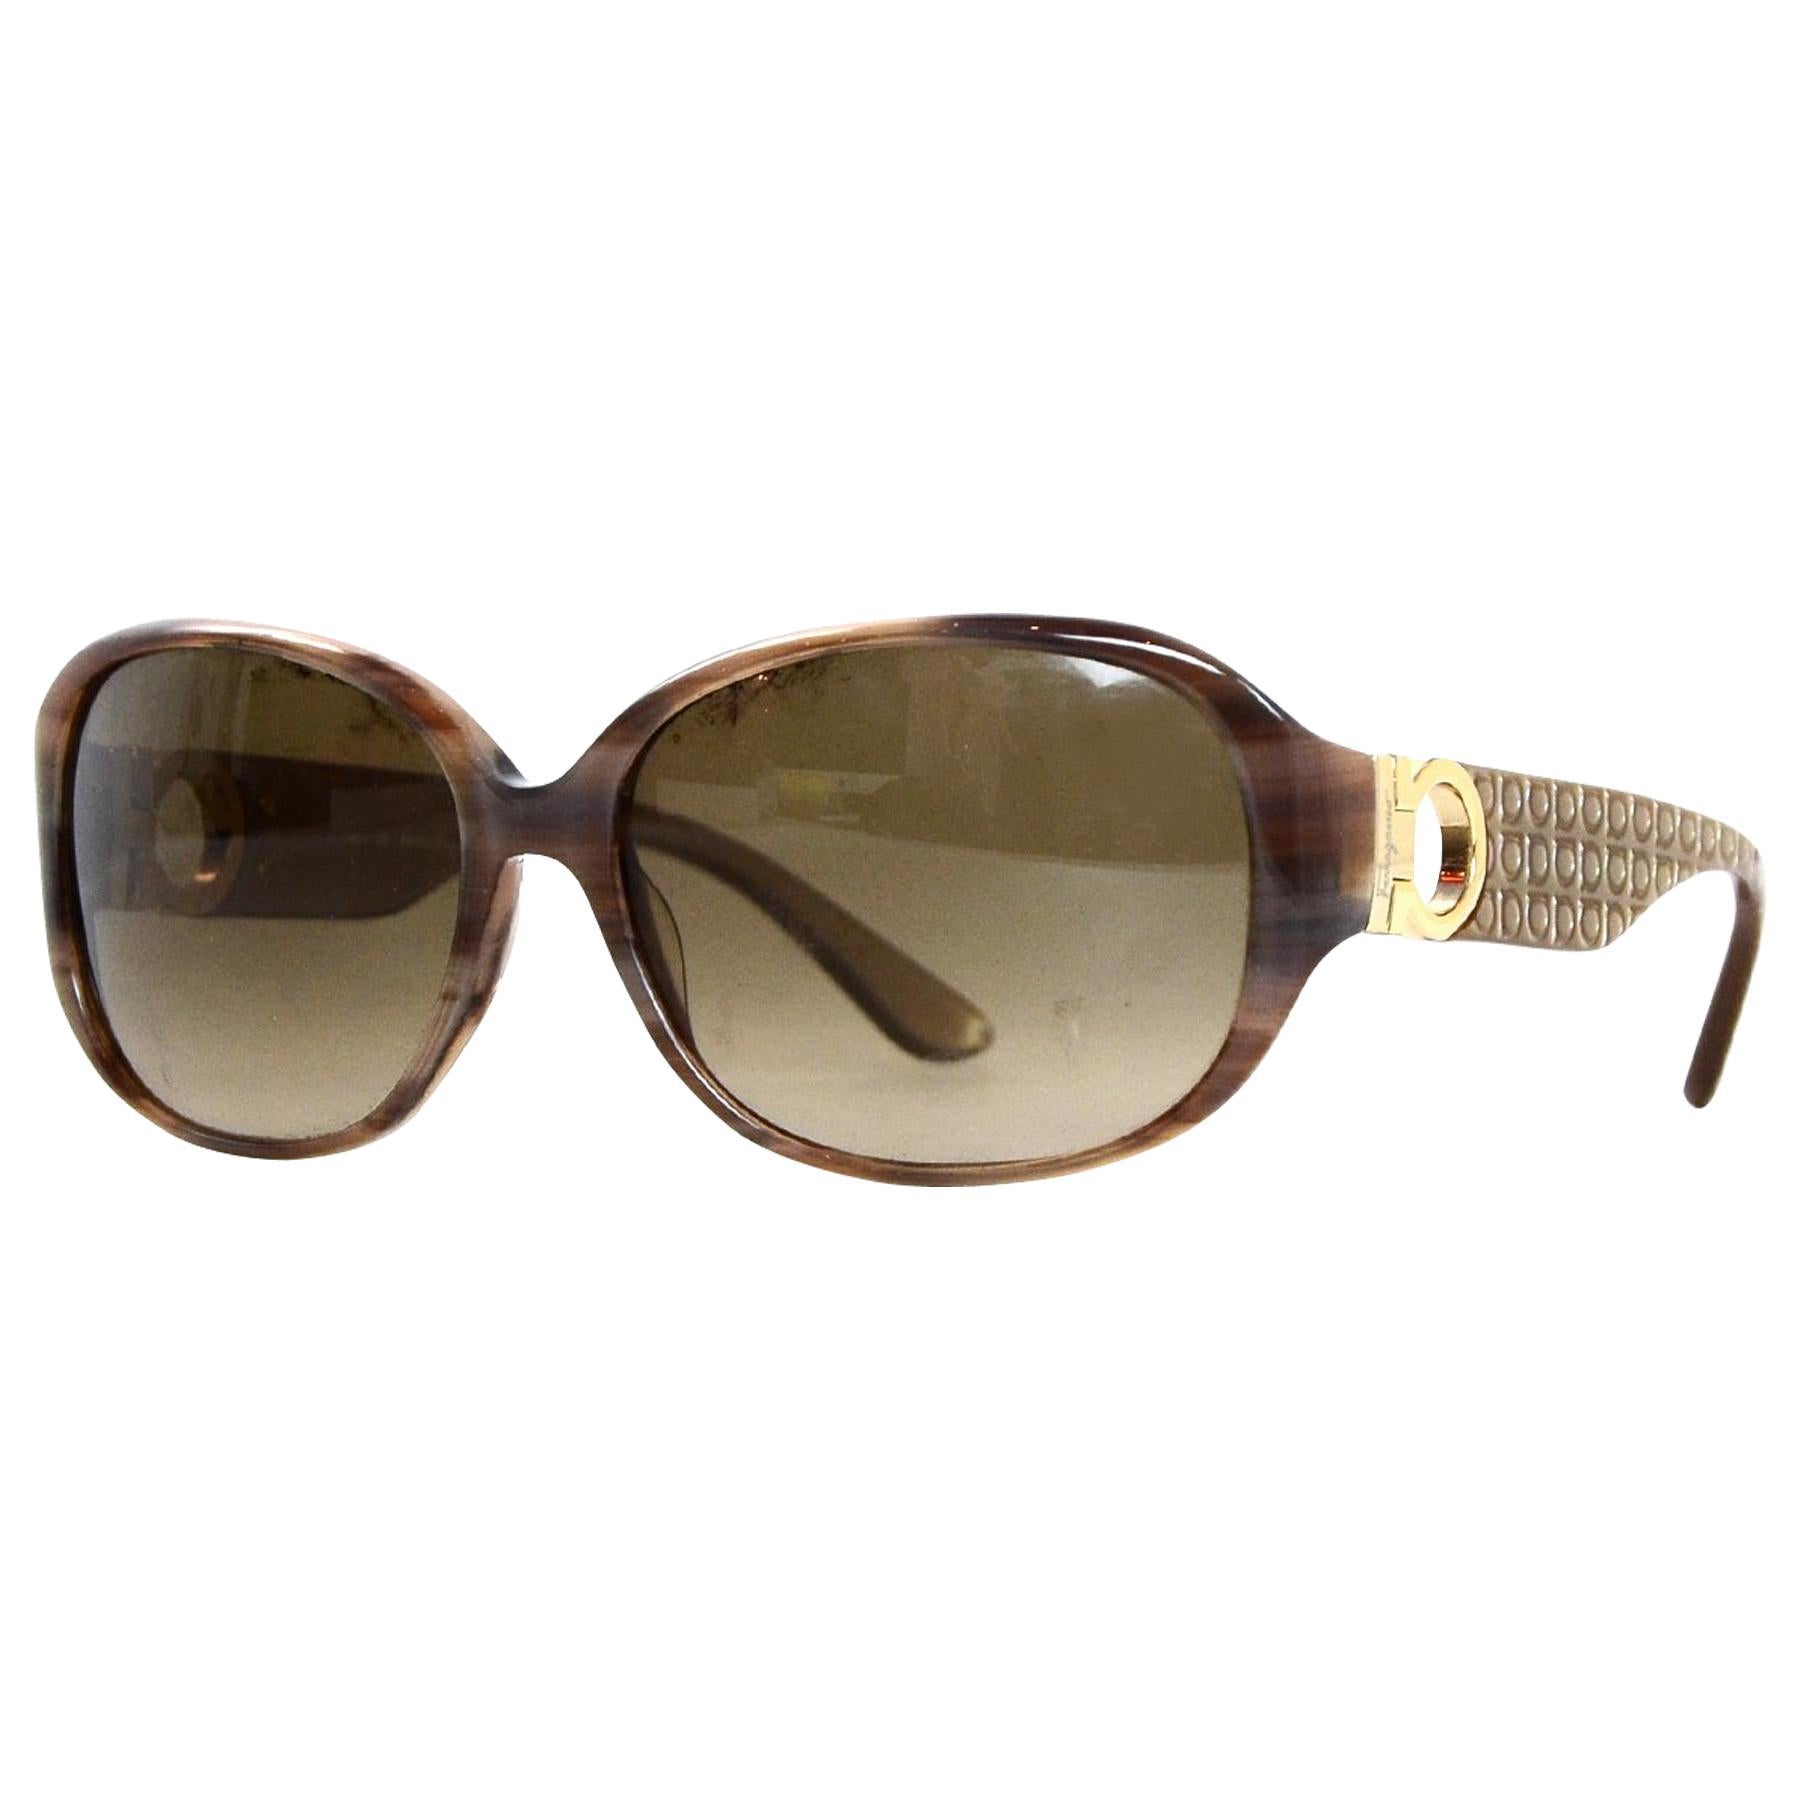 Salvatore Ferragamo Tan Resin Sunglasses Frame W/ Case/Box